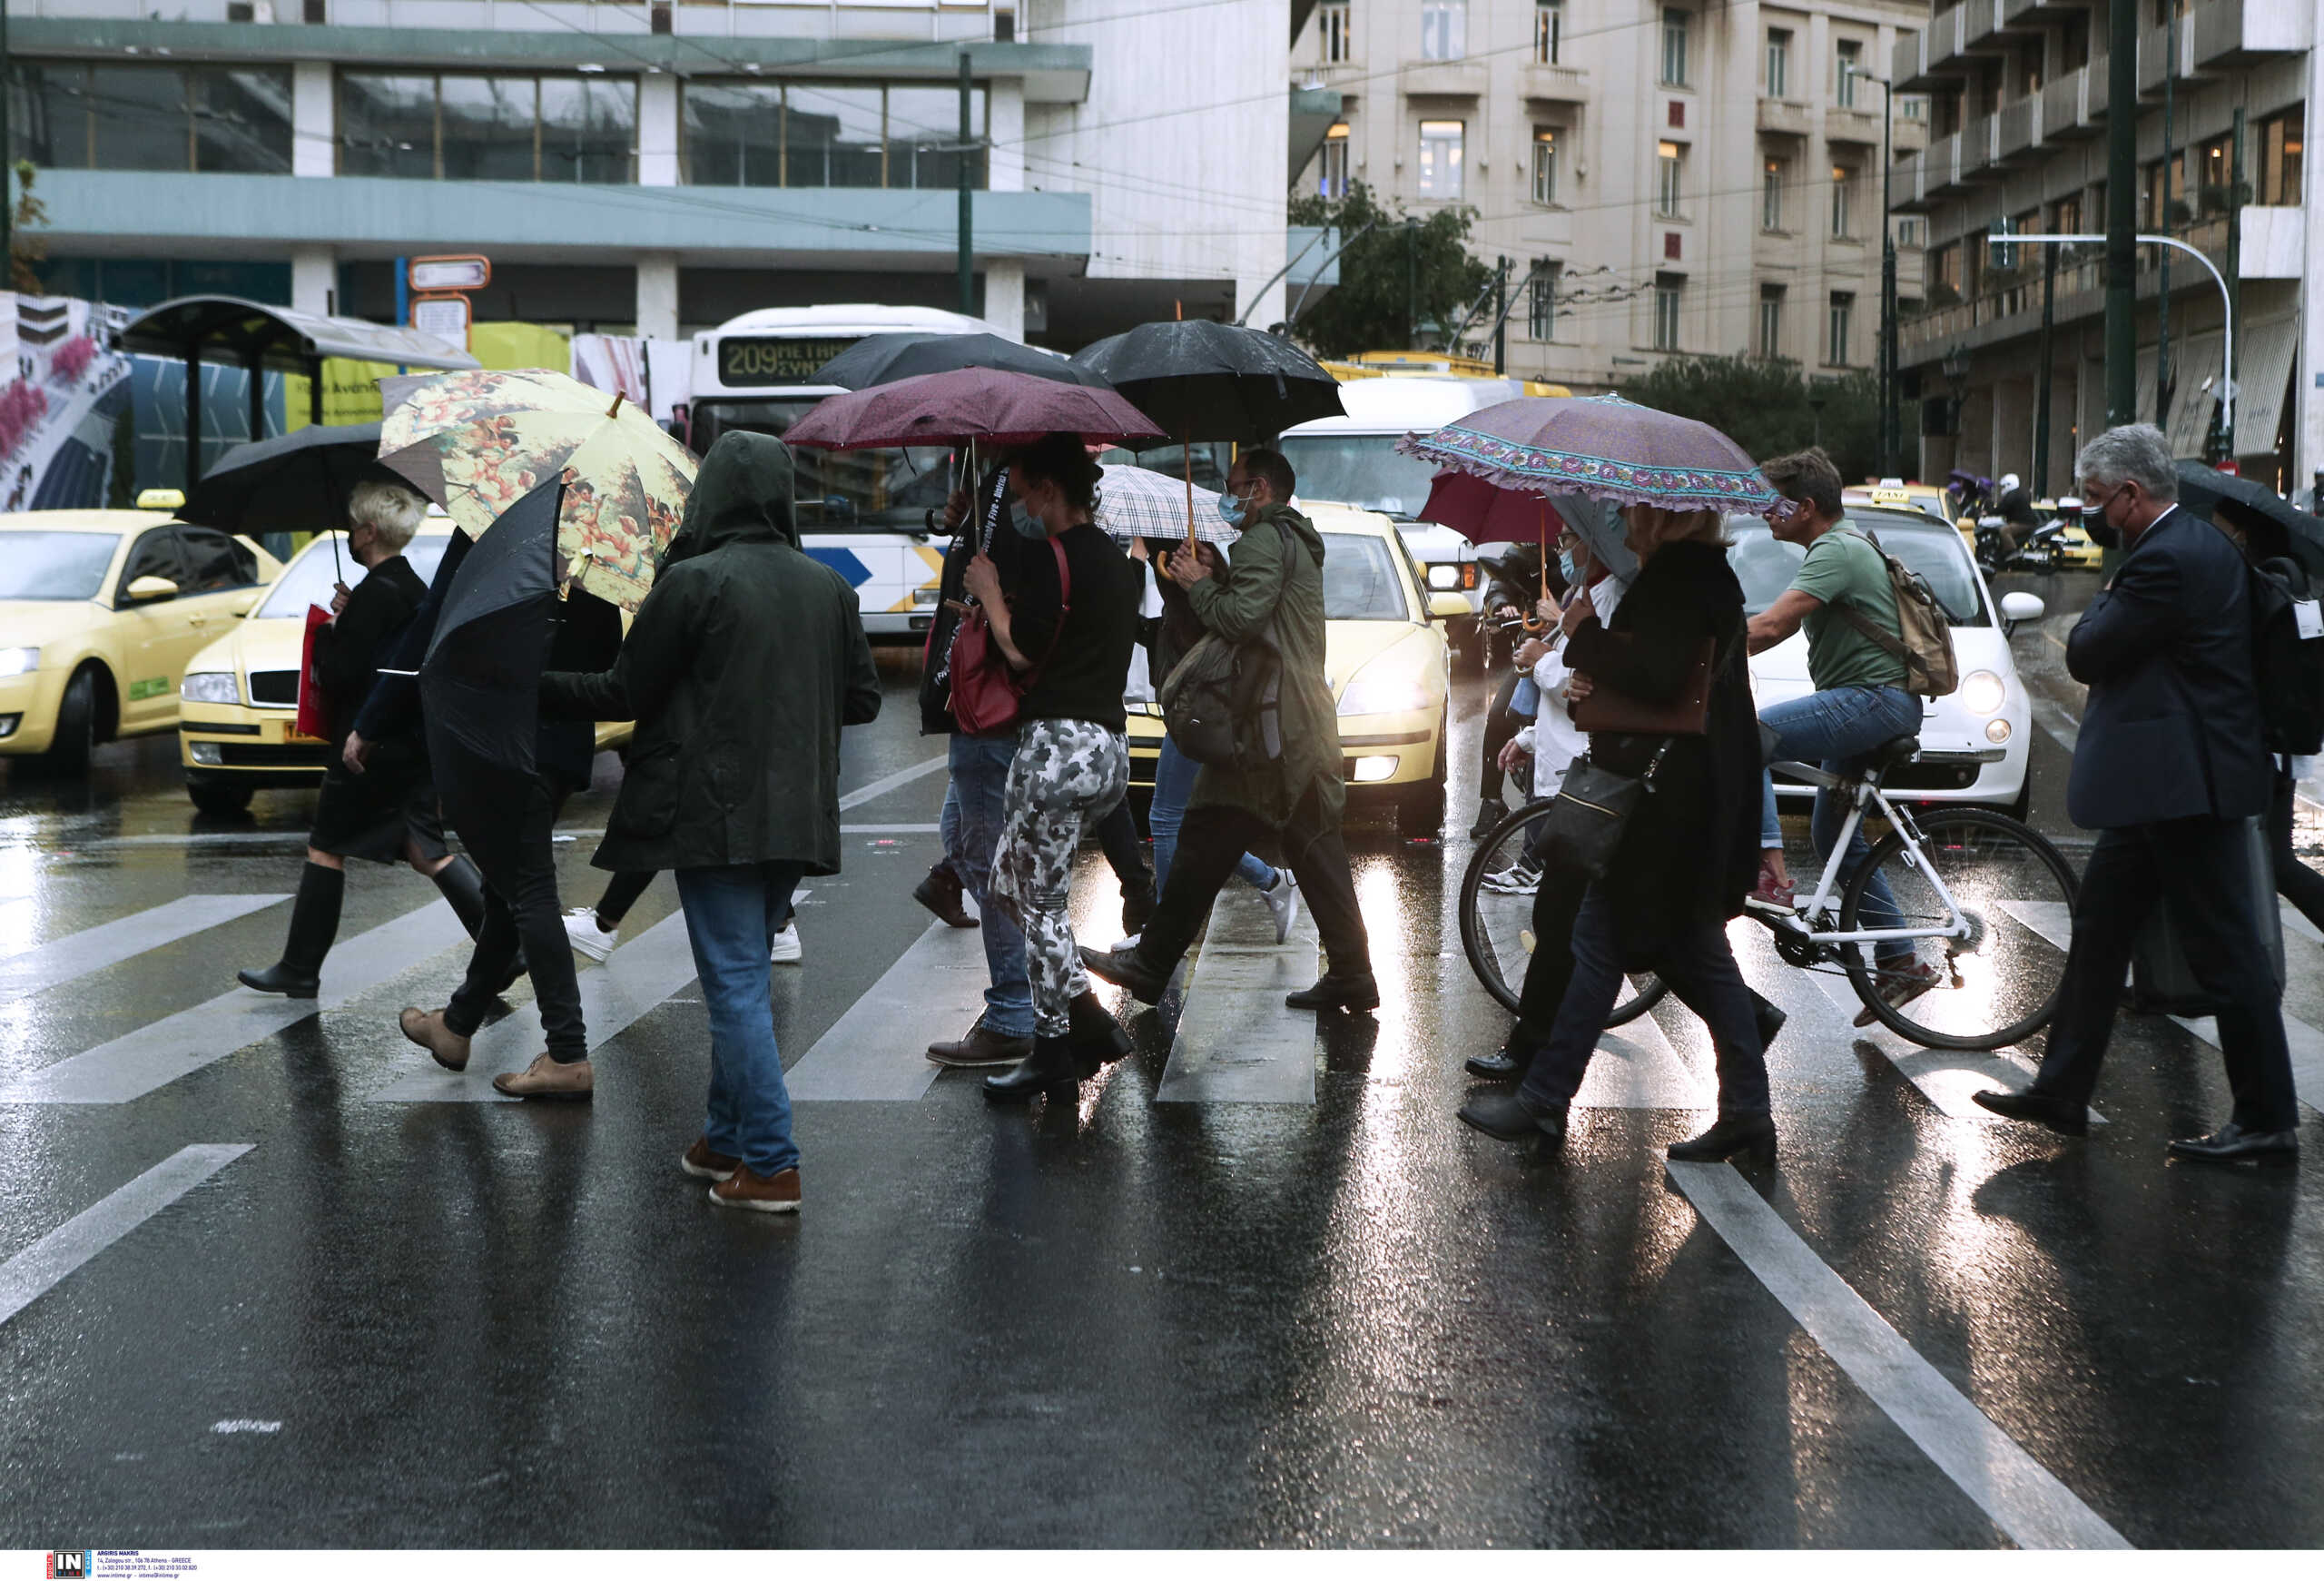 Καιρός: Κακοκαιρία με καταιγίδες και διαλείμματα ηλιοφάνειας, λέει στο newsit.gr o Τάσος Αρνιακός – Πότε εξασθενούν τα φαινόμενα